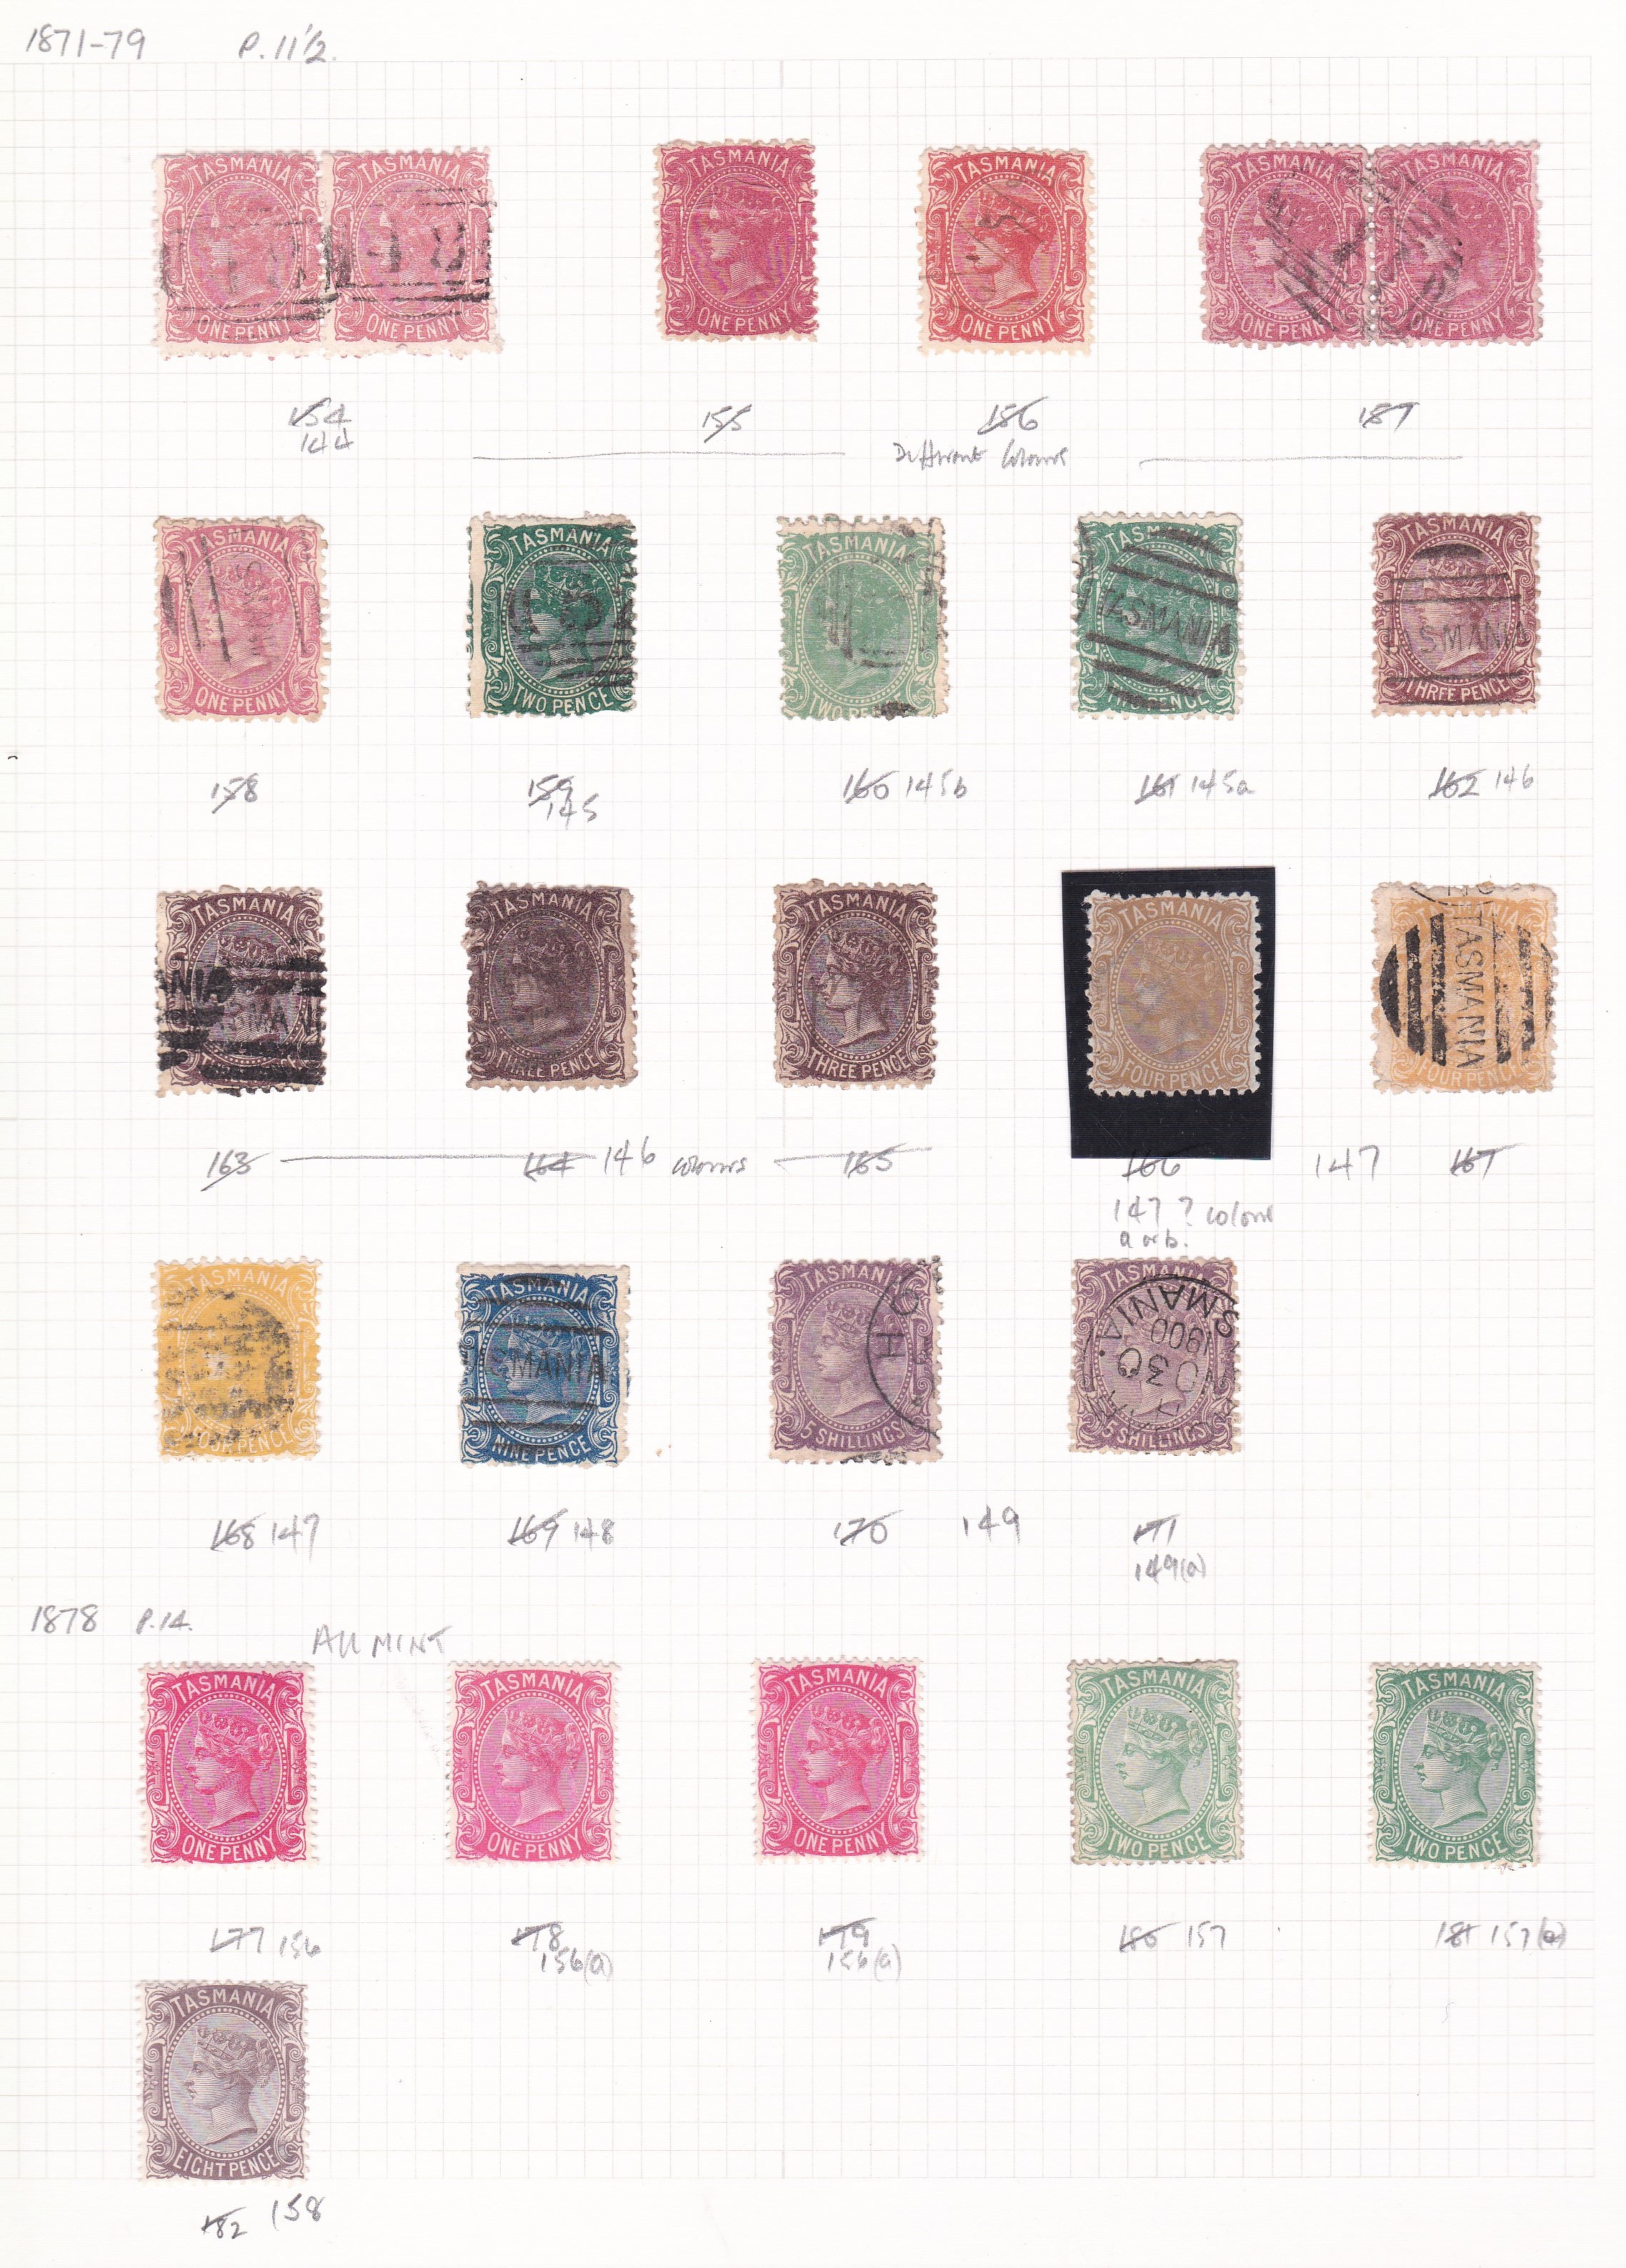 Australia (Tasmania) 1871-1879 Perf 11 1/2 mostly used range to 5/- (2) and 1878, perf 14, mint